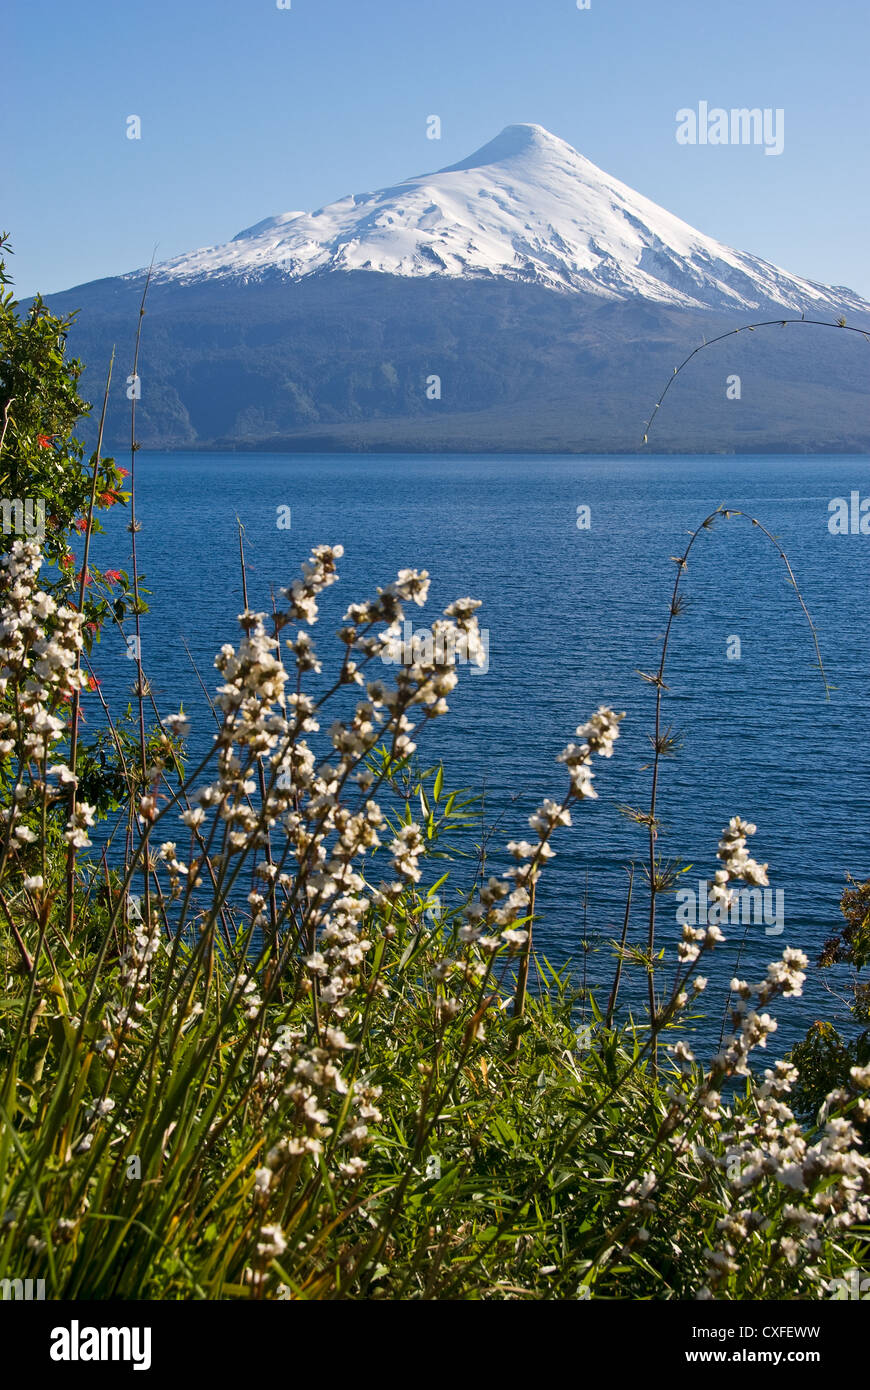 Elk198-3521v Chile, Lago Llanquihue, Volcan Osorno volcano Stock Photo